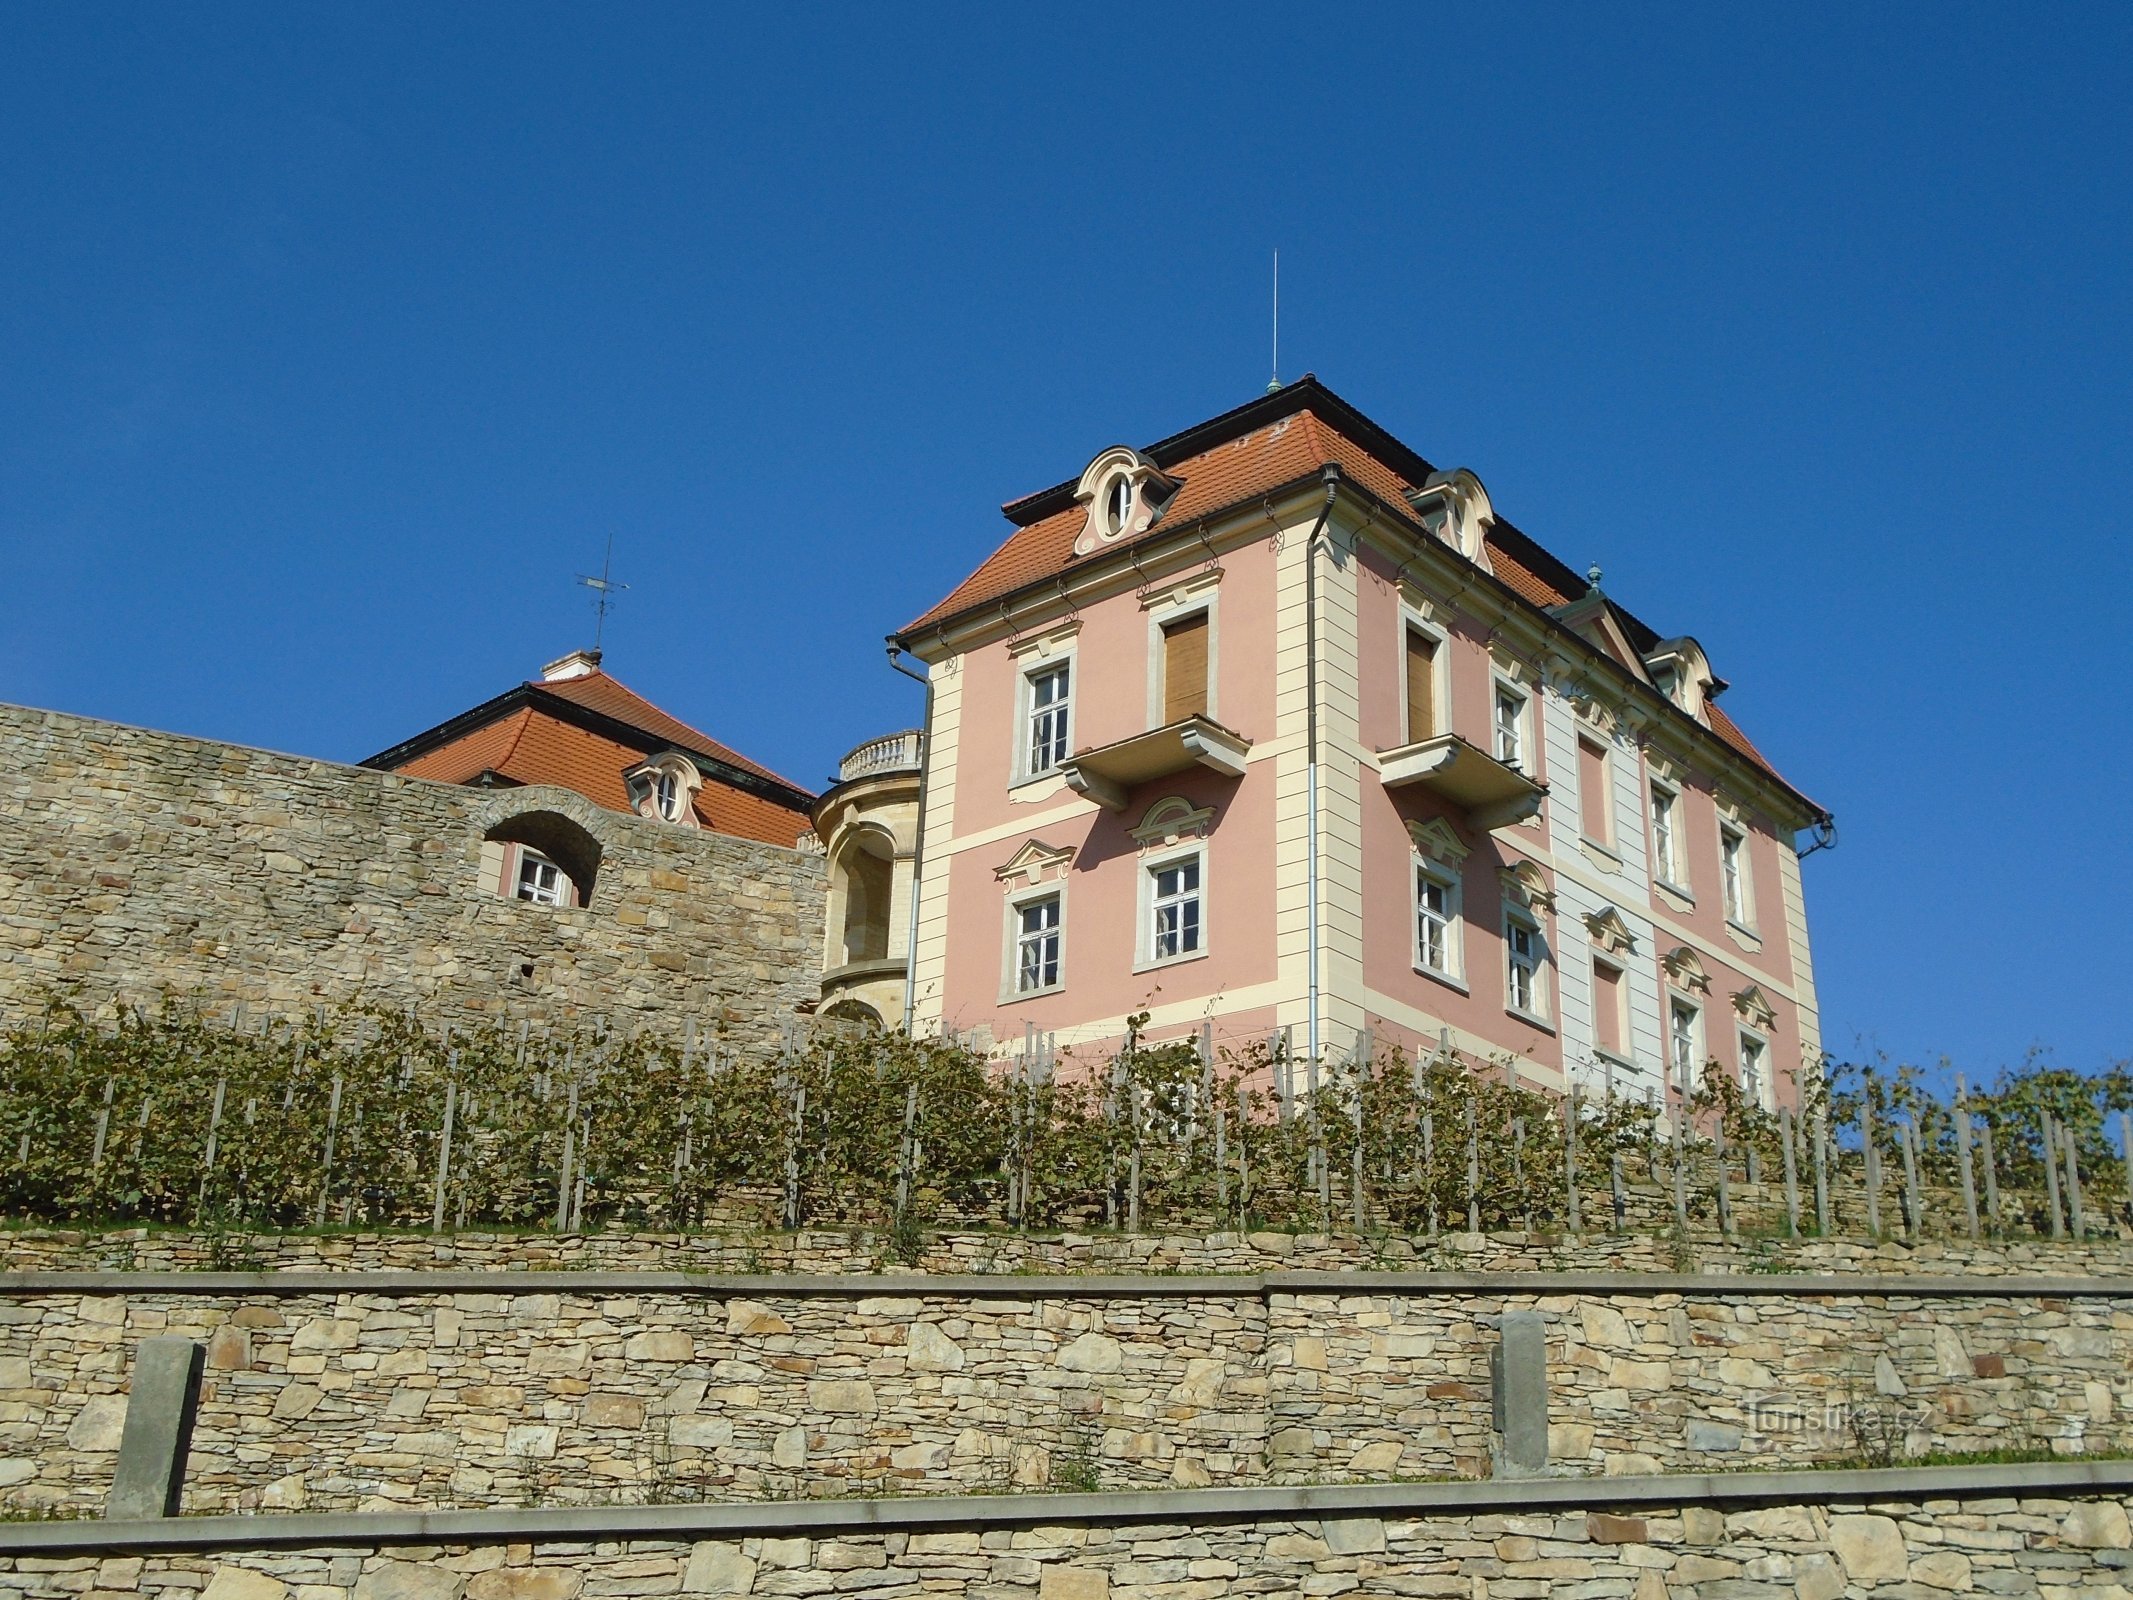 Dvorac (Chvalkovice)